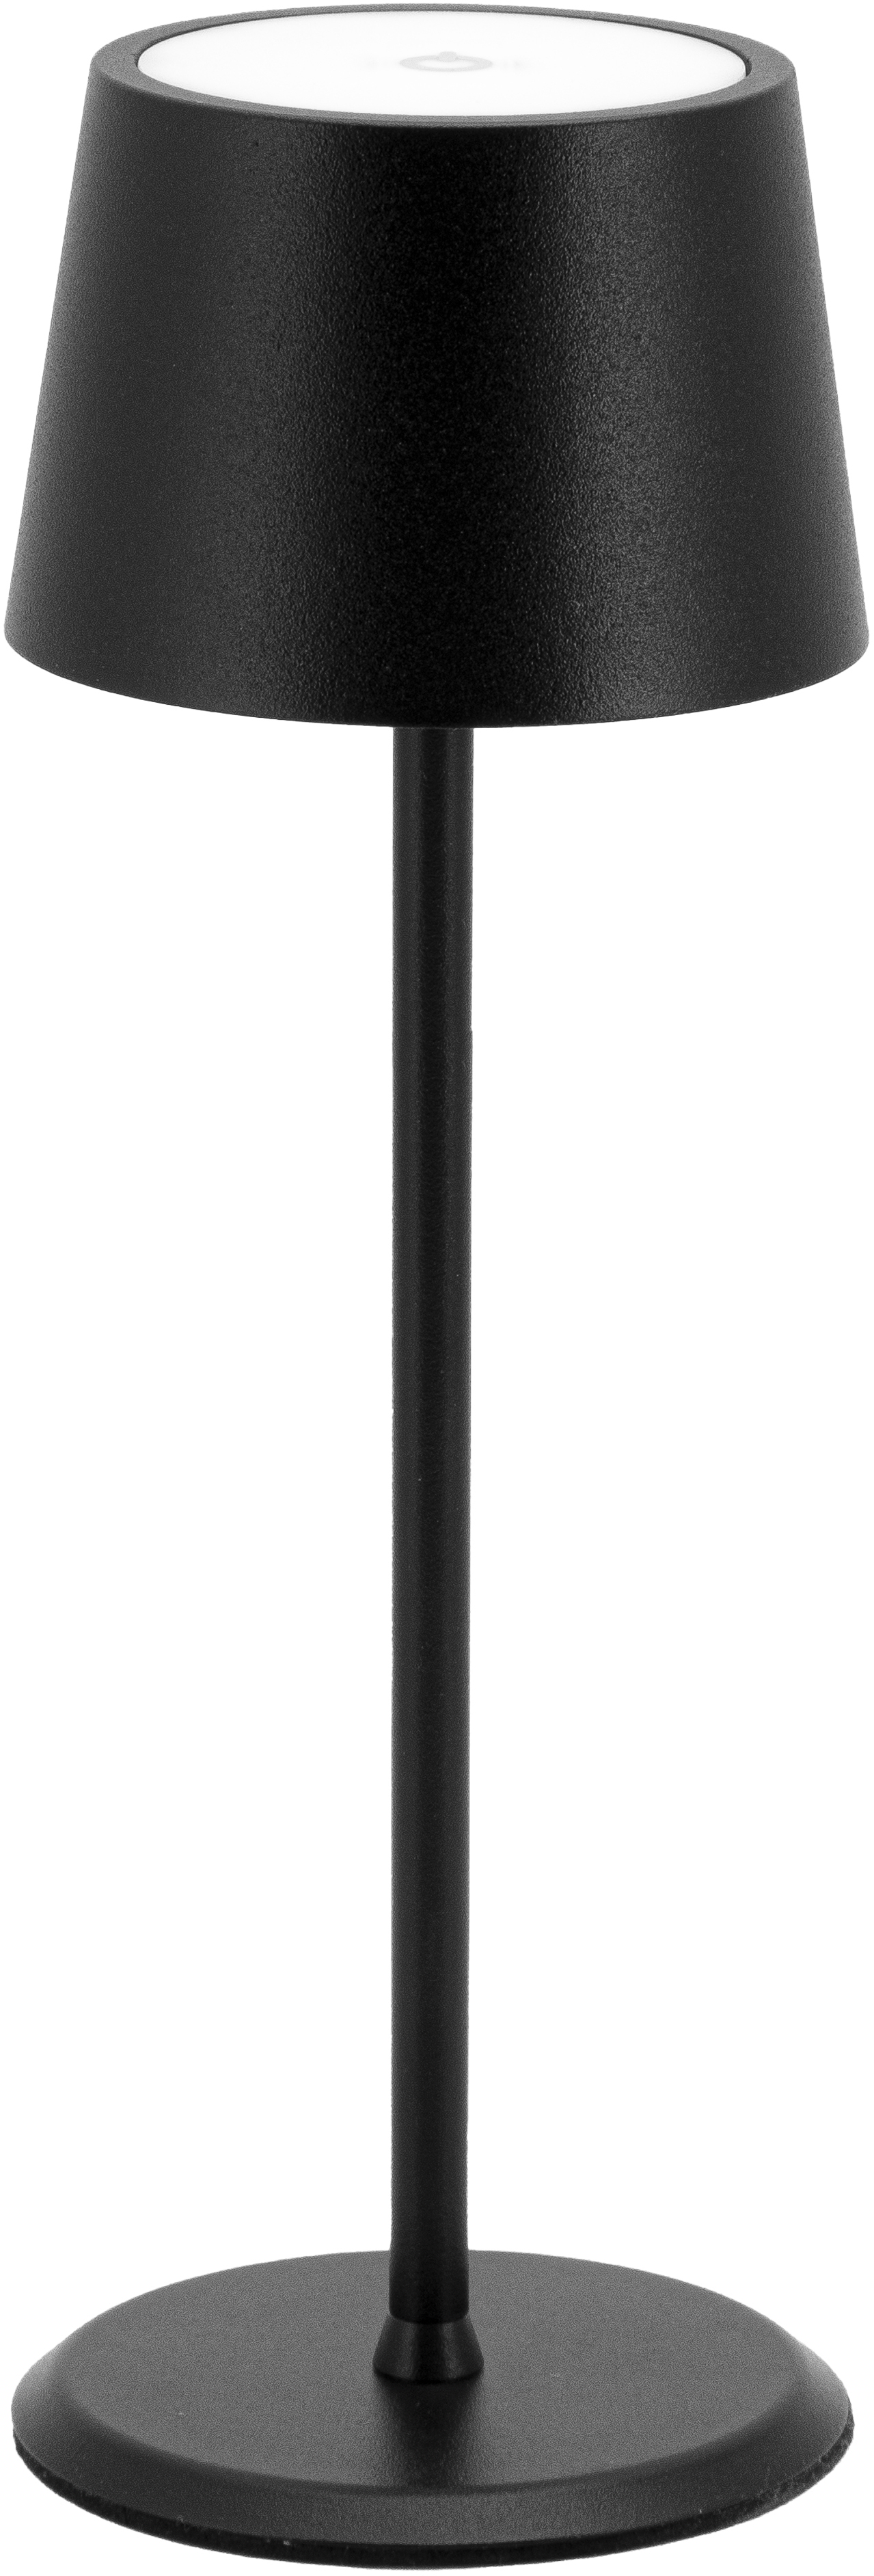 SECURIT Lampe de table MONTE CARLO LP-MC-BL noir, batterie, dimmable